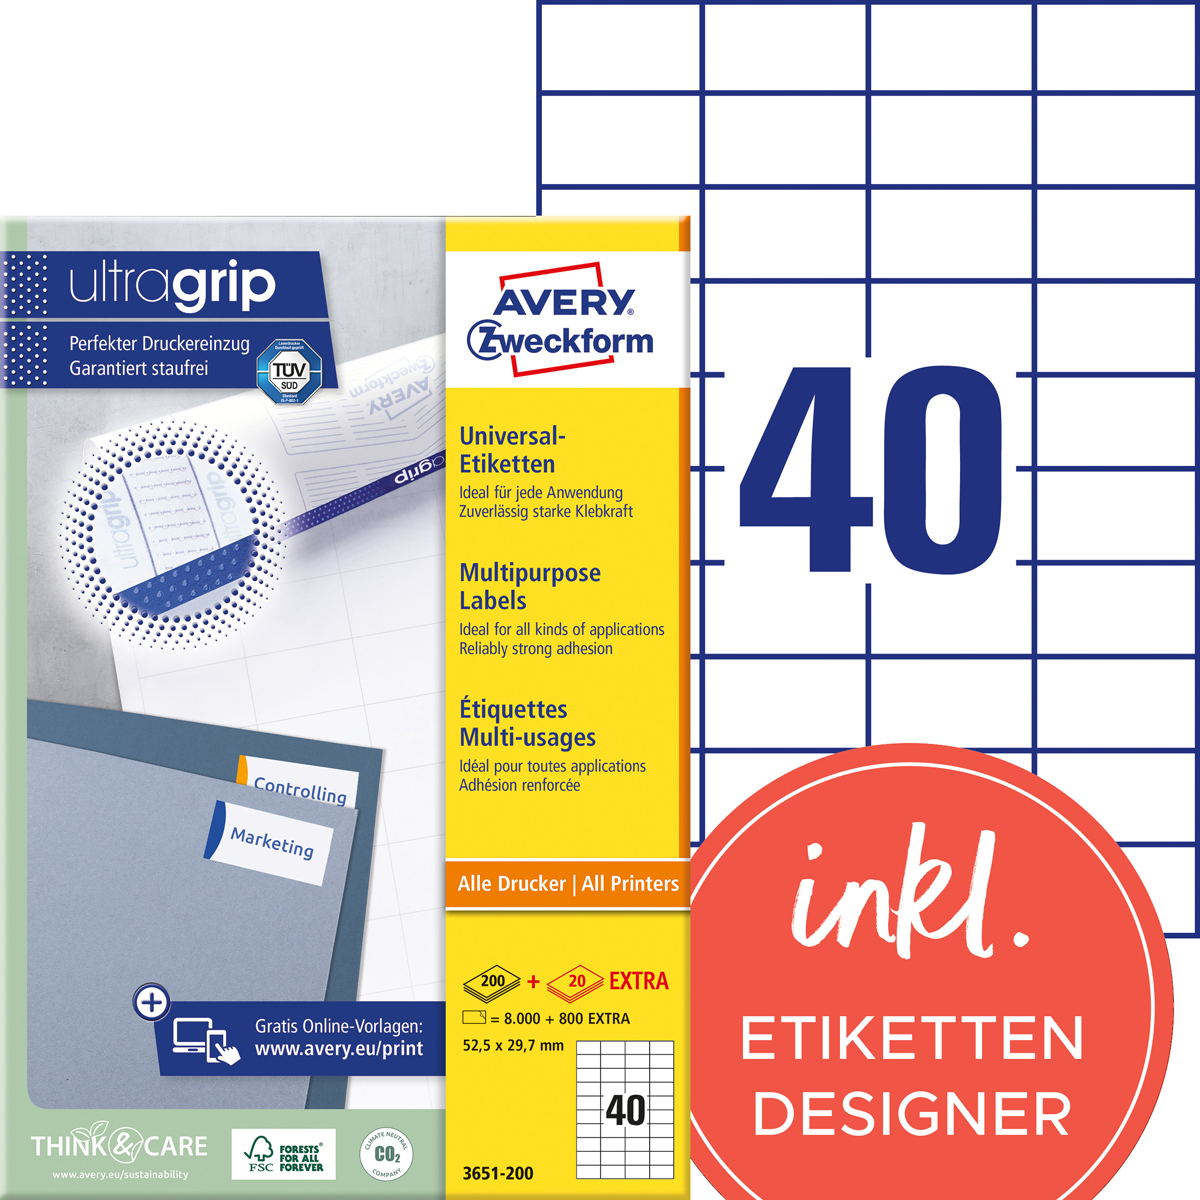 Avery Zweckform 3651-200 Universal-Etiketten, 52,5 x 29,7 mm, 8.800 Etiketten / 220 Bogen, weiß